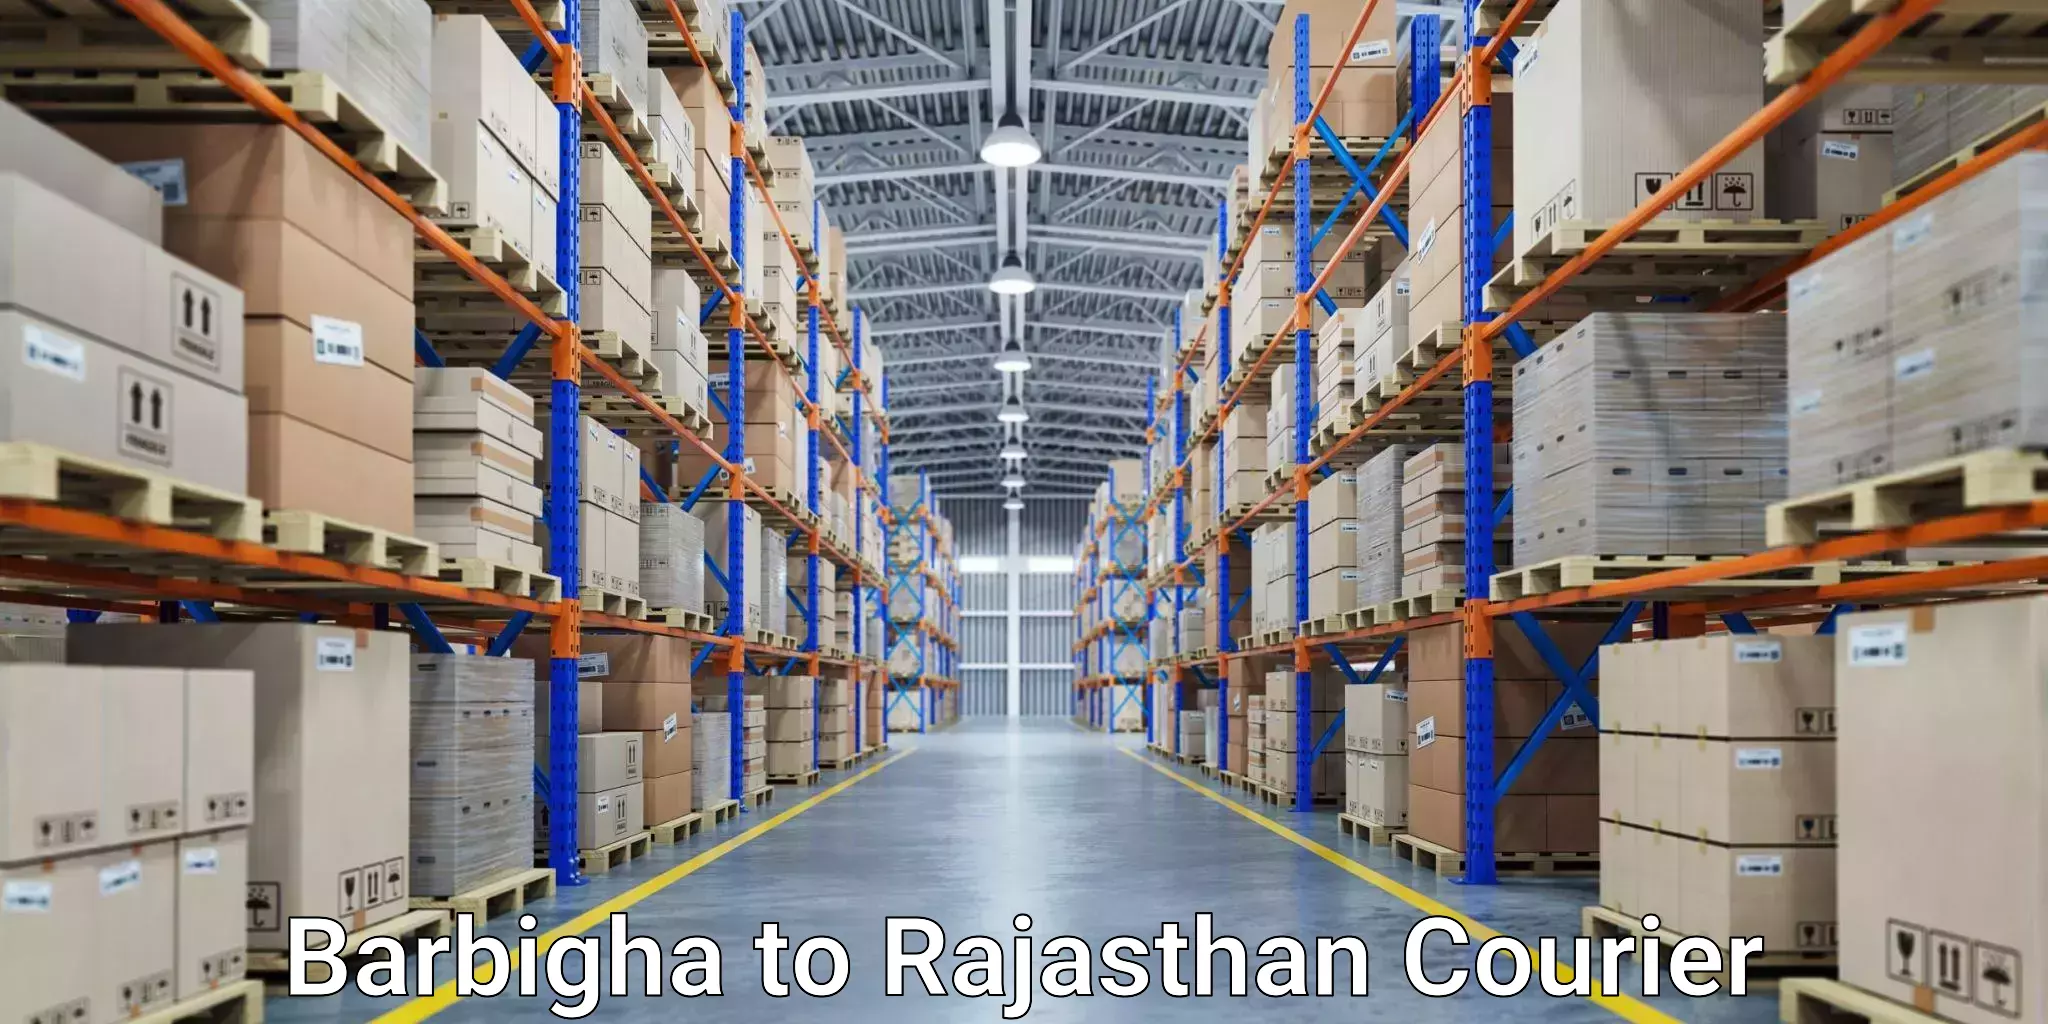 Digital courier platforms Barbigha to Bhatewar